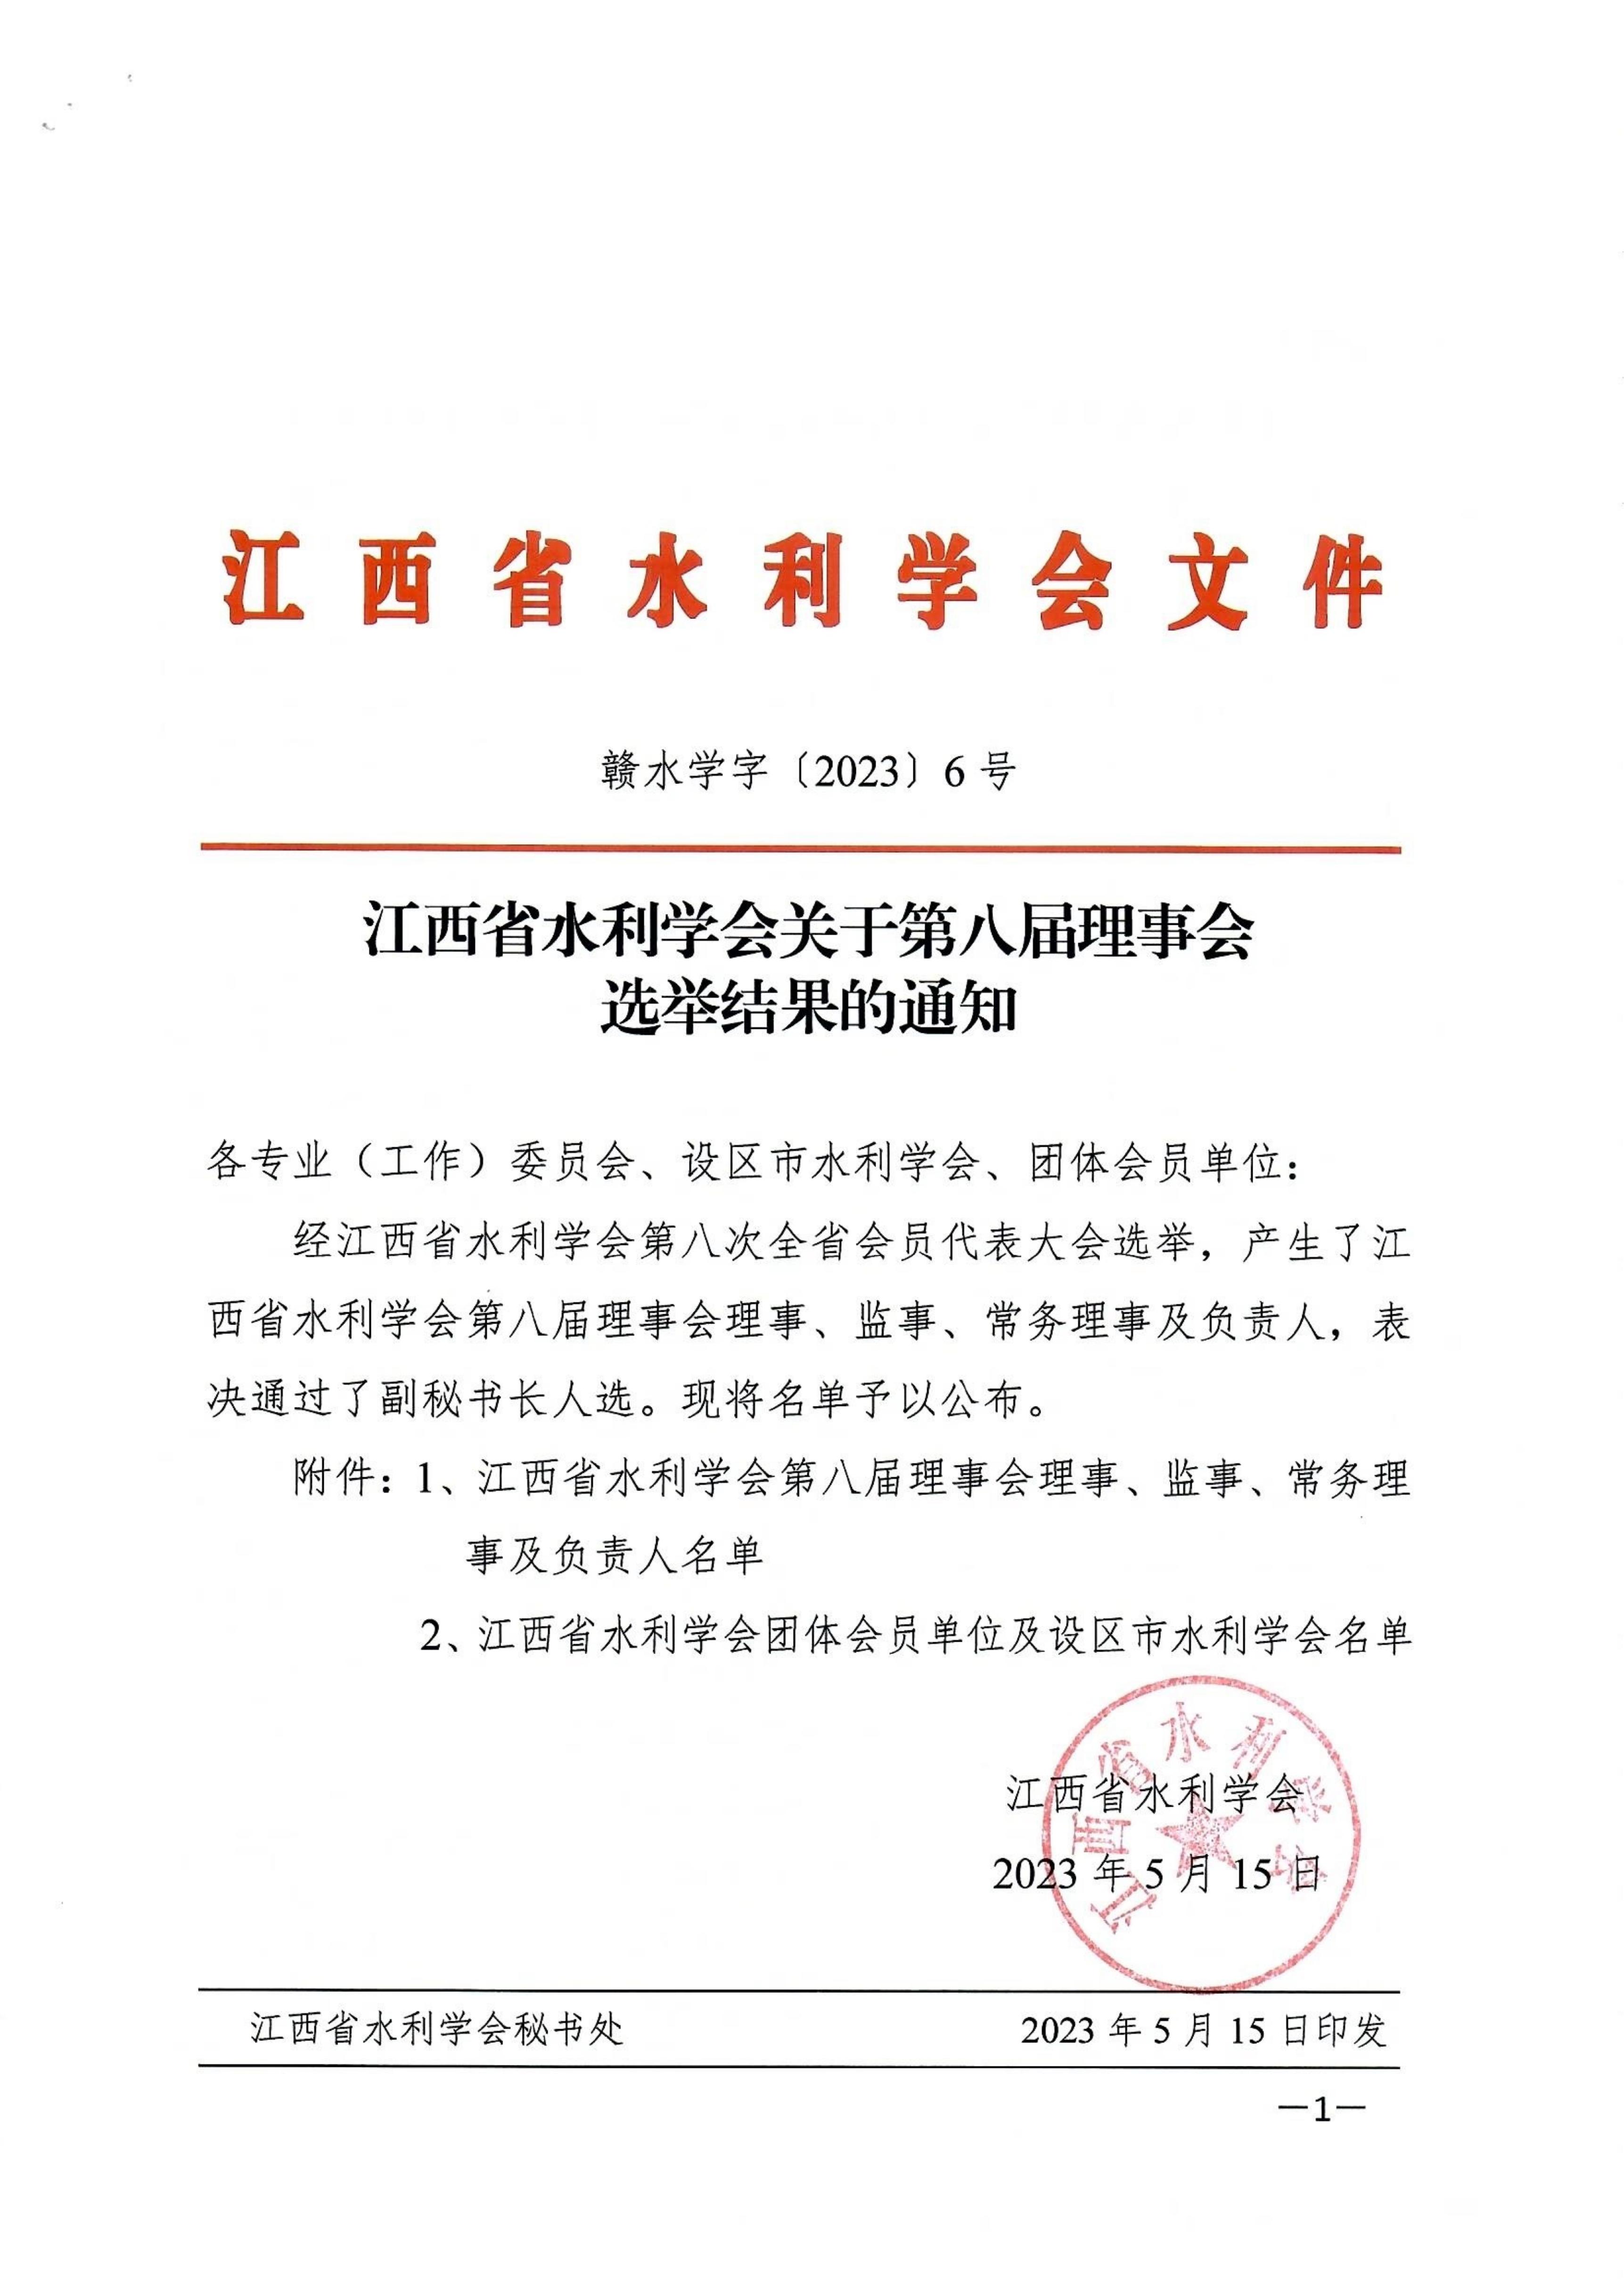 江西省水利学会关于第八届理事会选举结果的通知_00.jpg